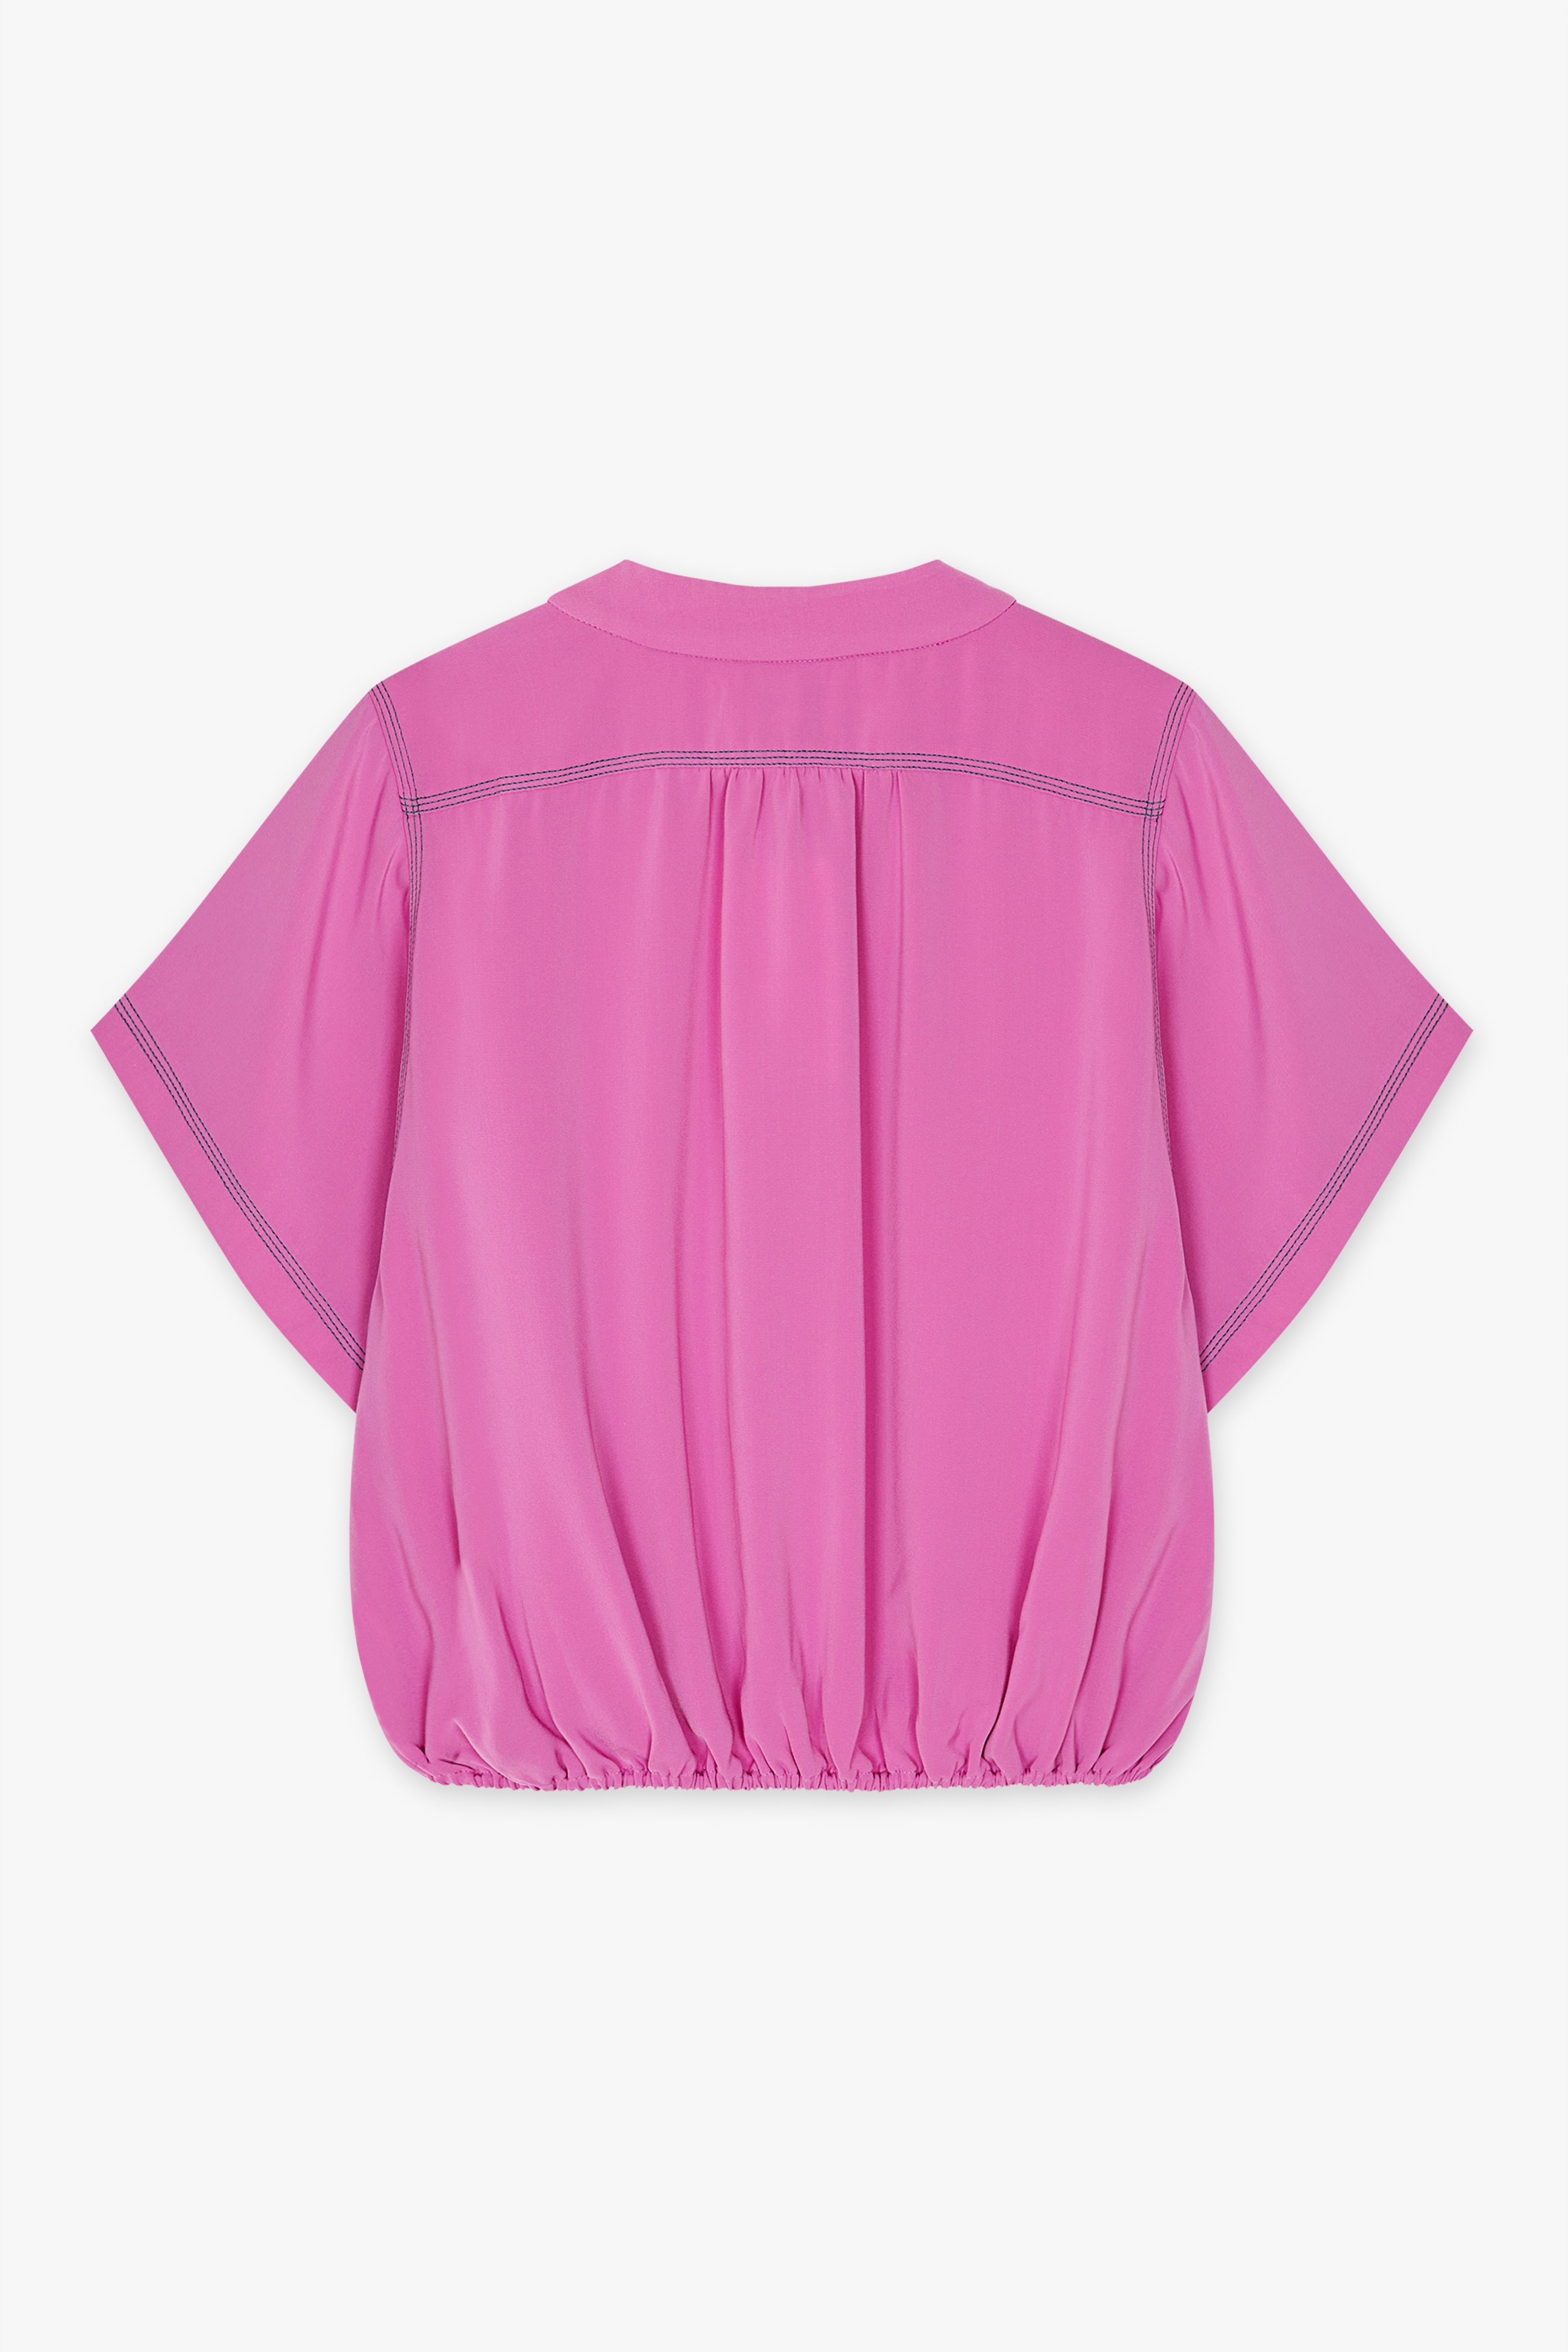 CKS Dames - LEDO - blouse long sleeves - lila